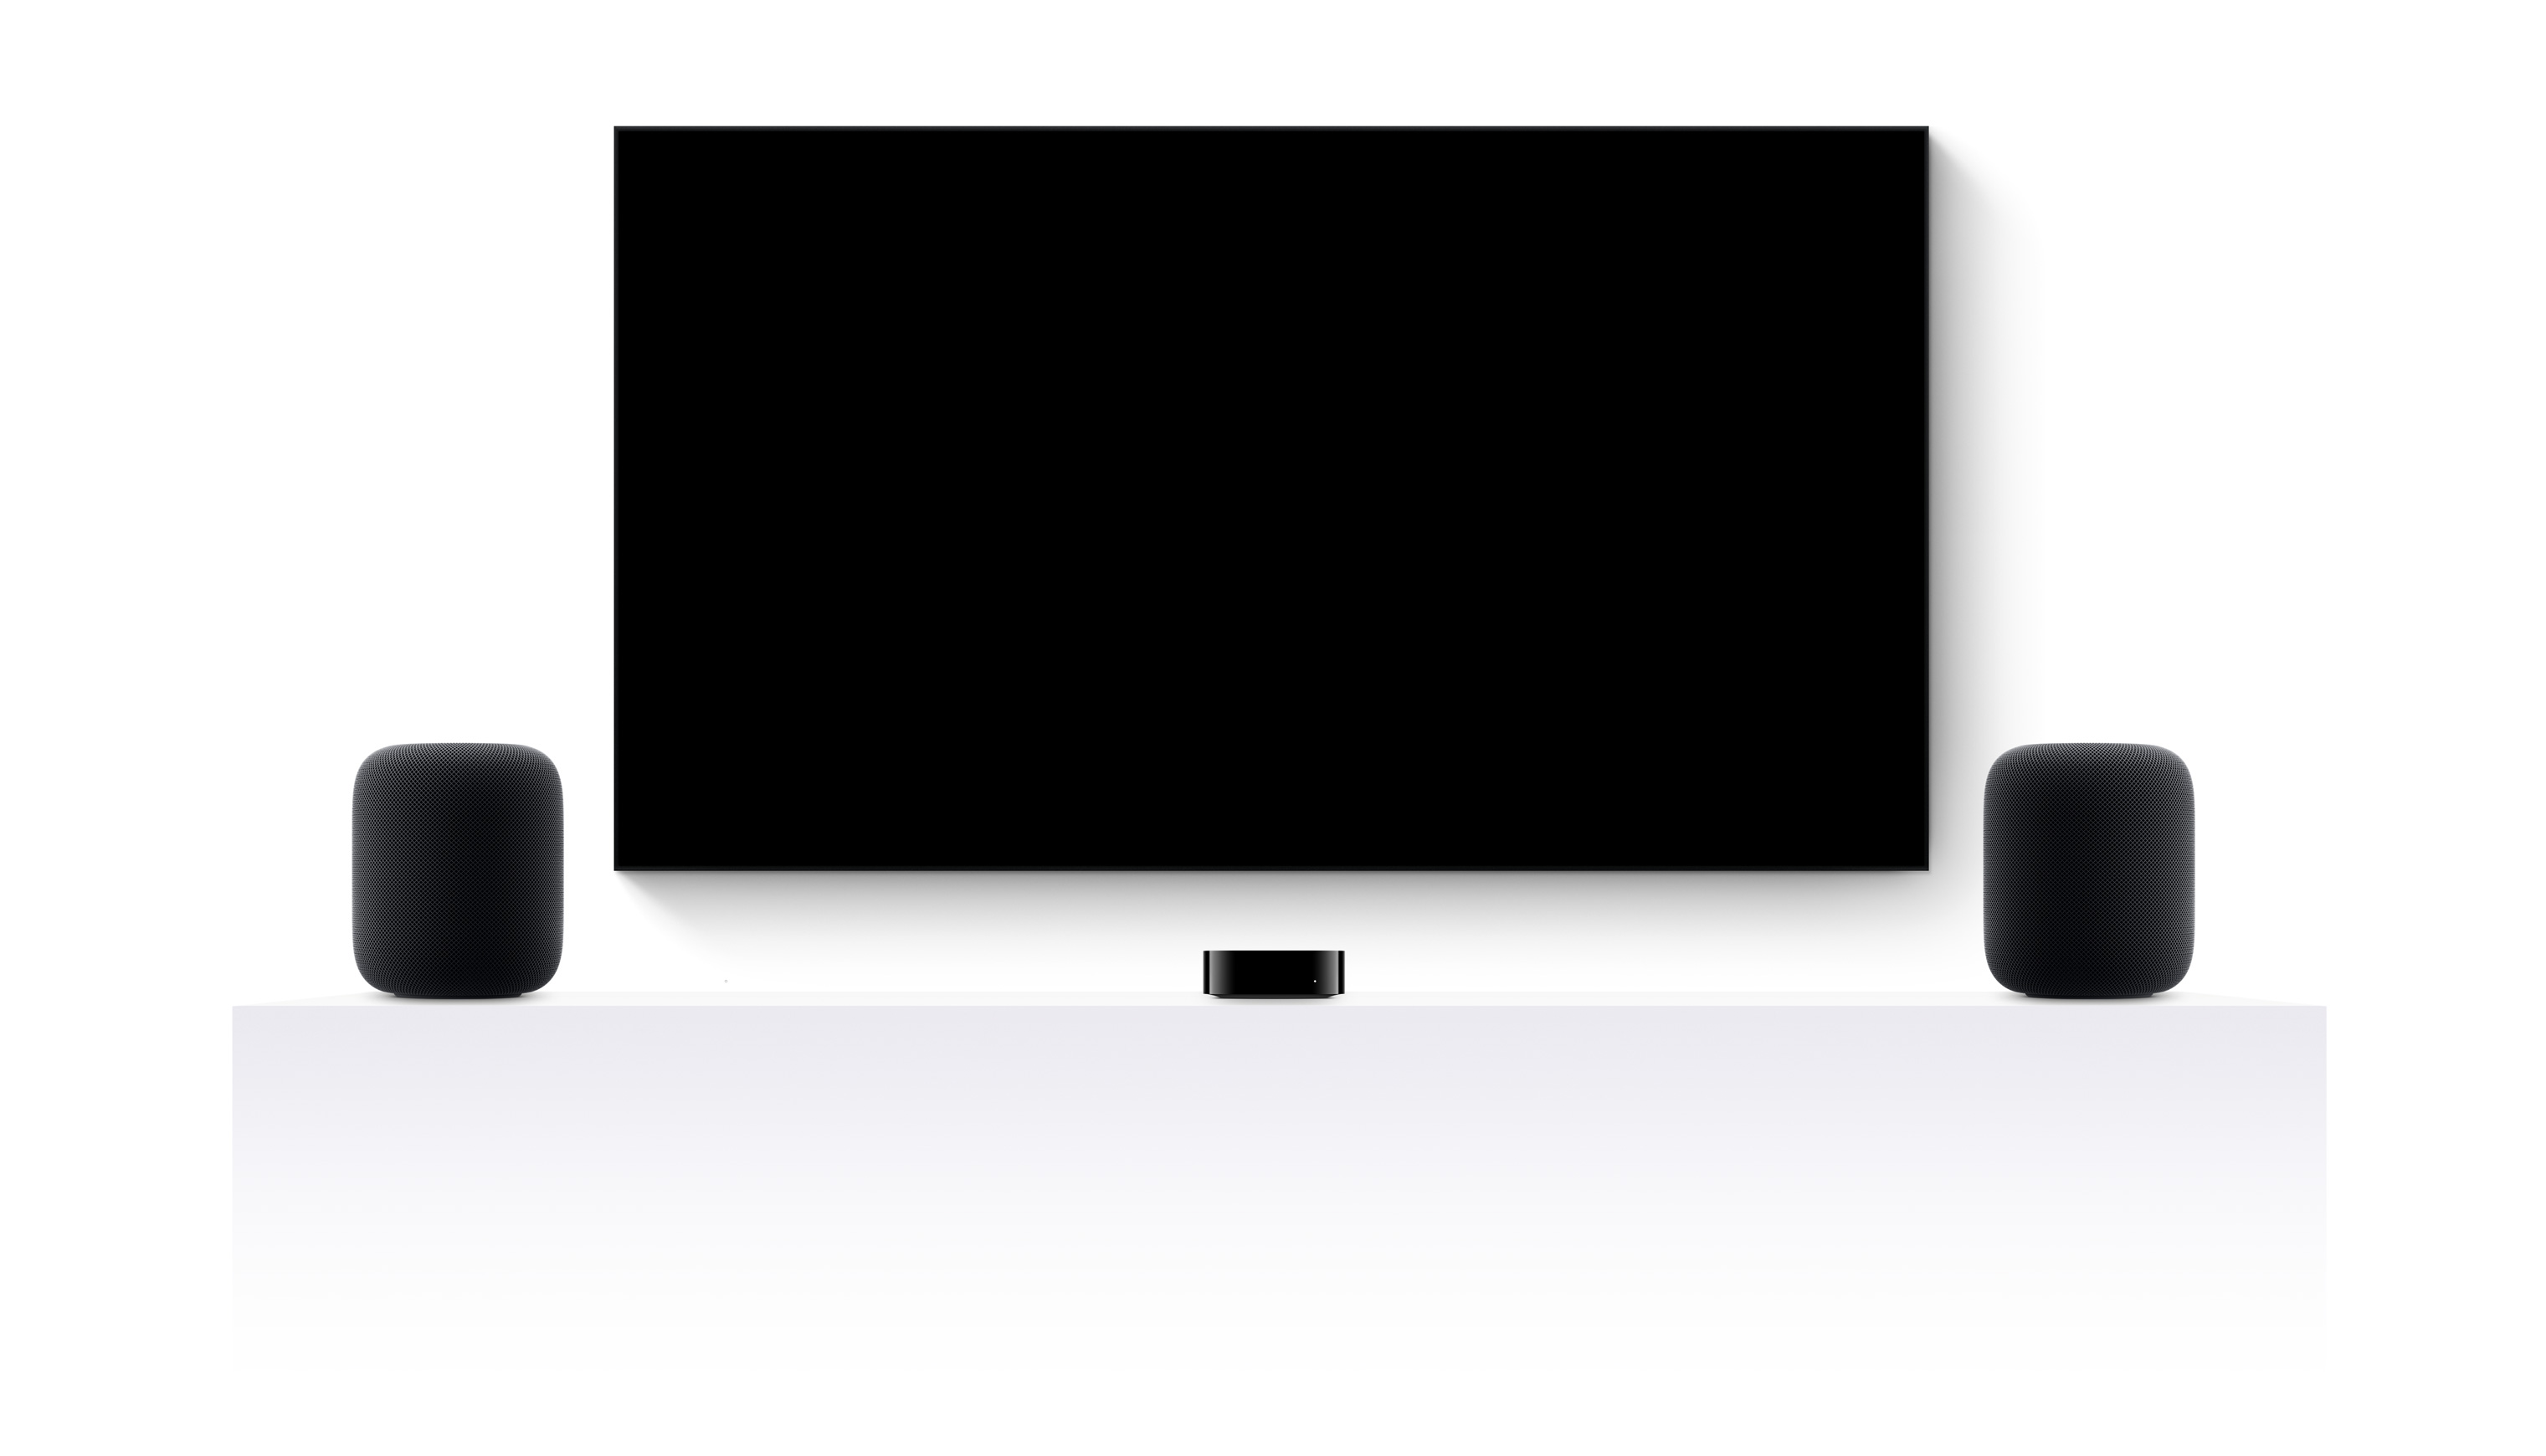 Apple TV 4K、兩部 HomePod，以及平面電視，螢幕顯示以各式 Apple TV+ 電影及節目剪輯成的預告片